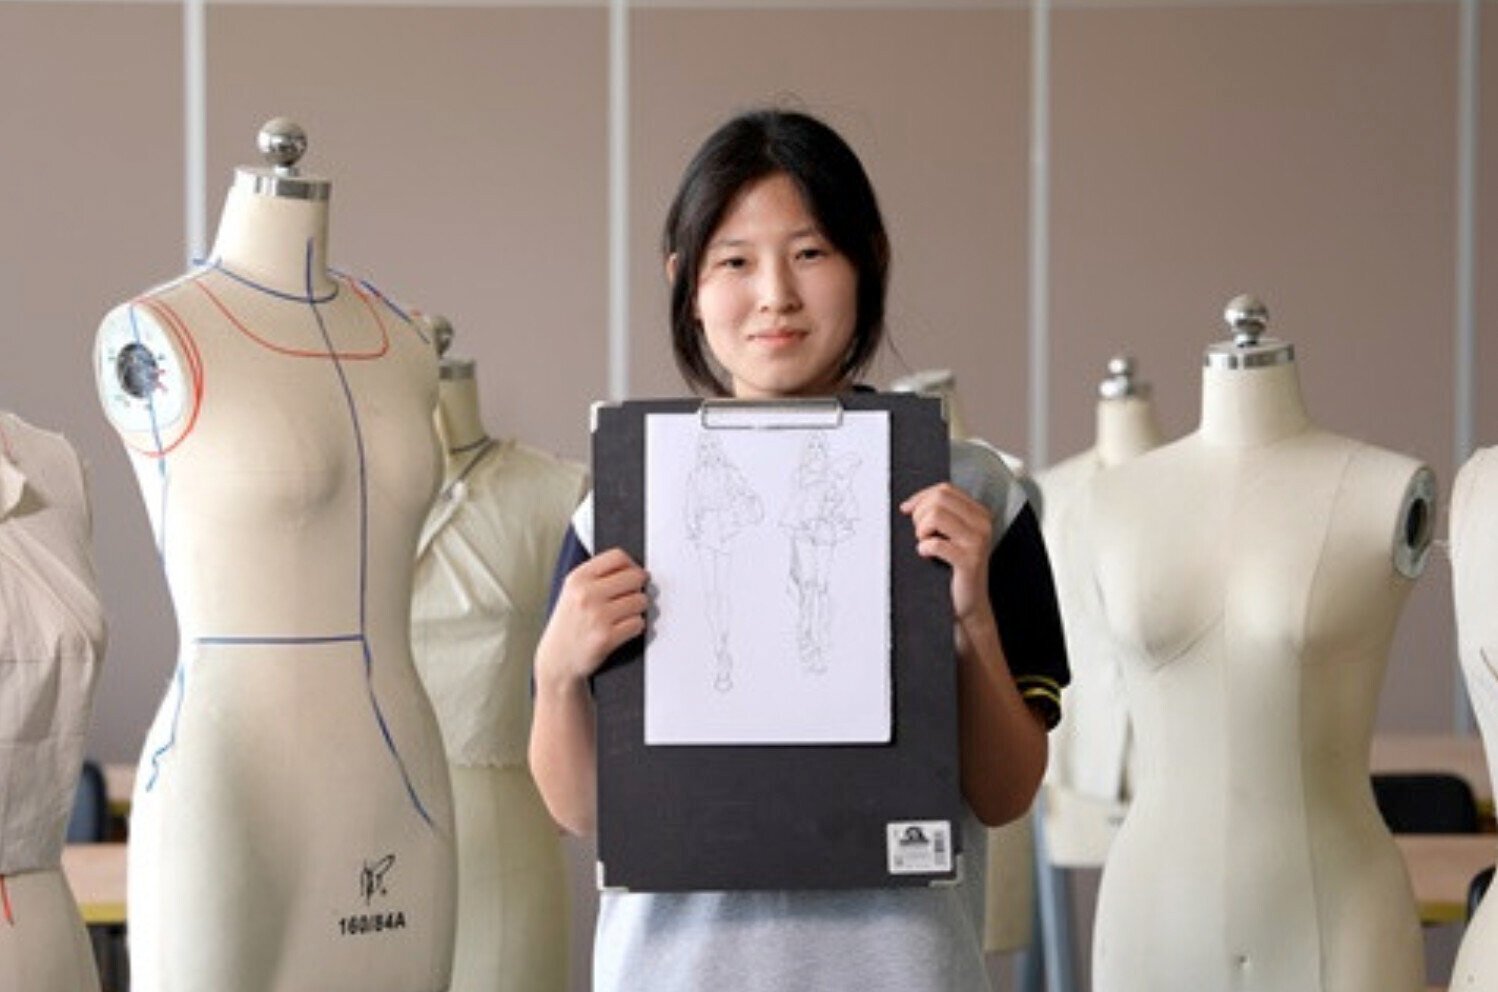 Nữ sinh 17 tuổi quyết tâm theo đuổi Toán học và thời trang. (Ảnh: Baidu)